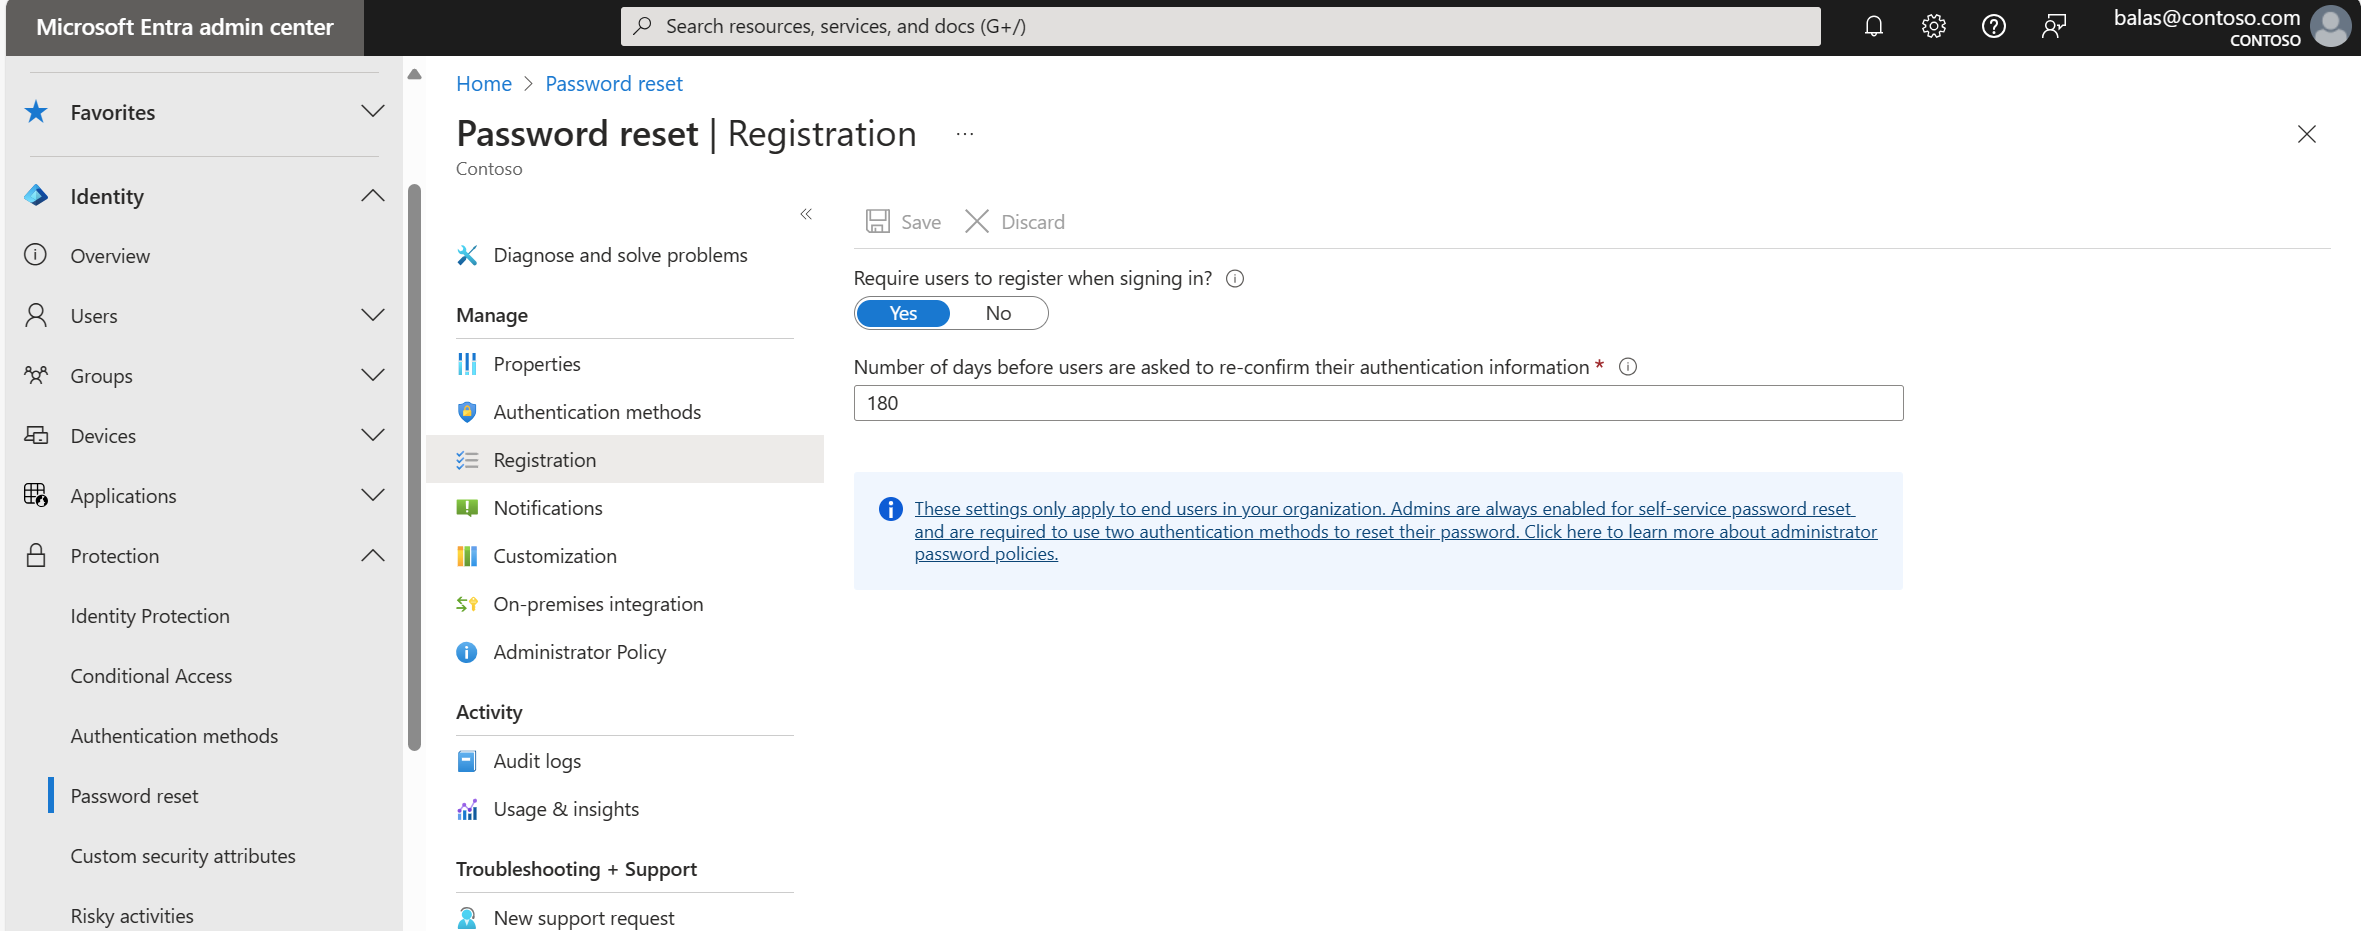 Microsoft Entra ID のパスワード リセット登録のスクリーンショット。